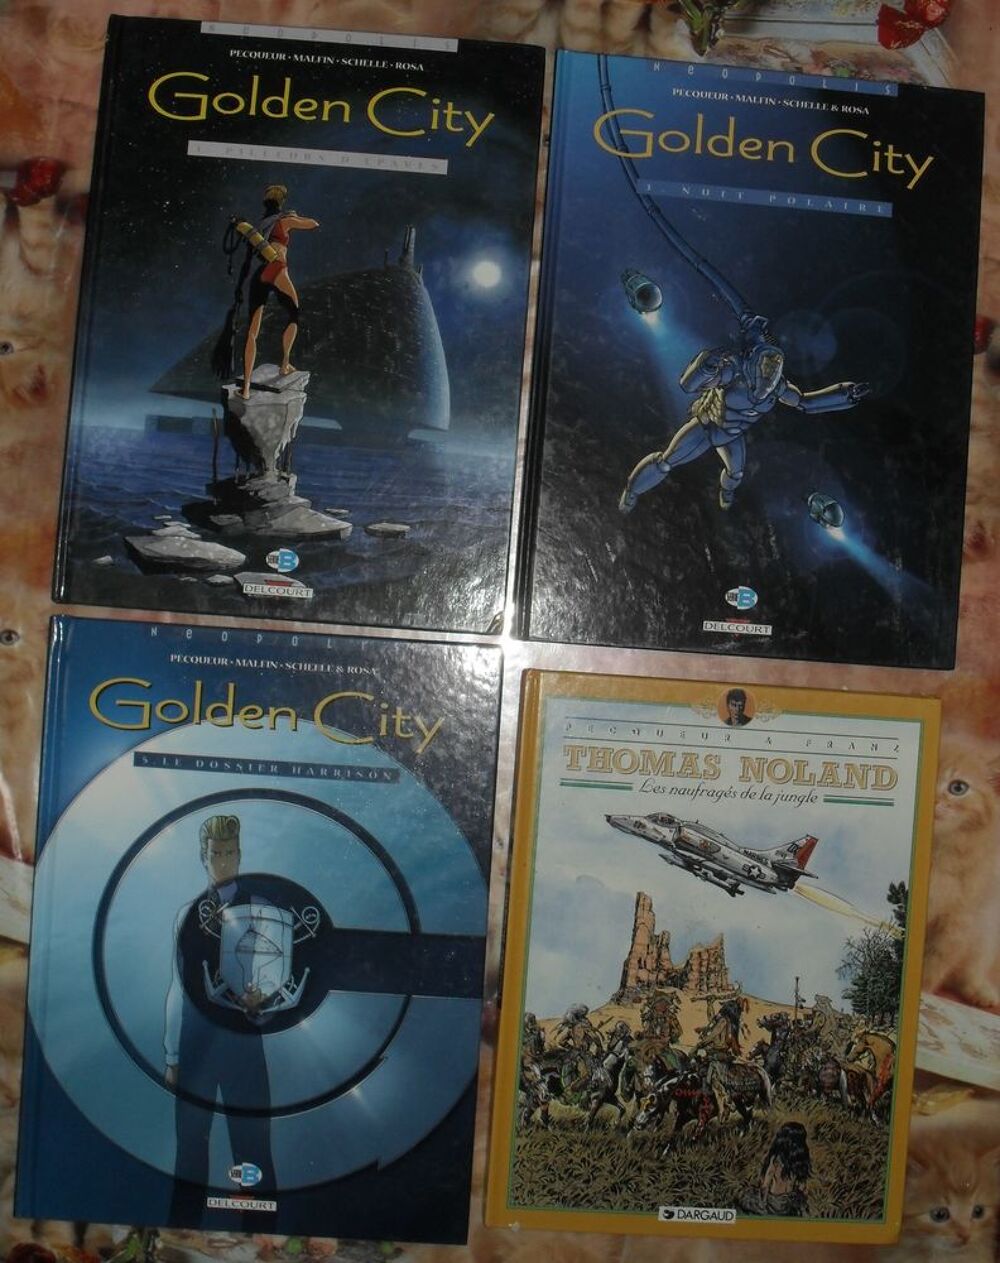 3 BD Golden City + 1 BD Nolan Livres et BD